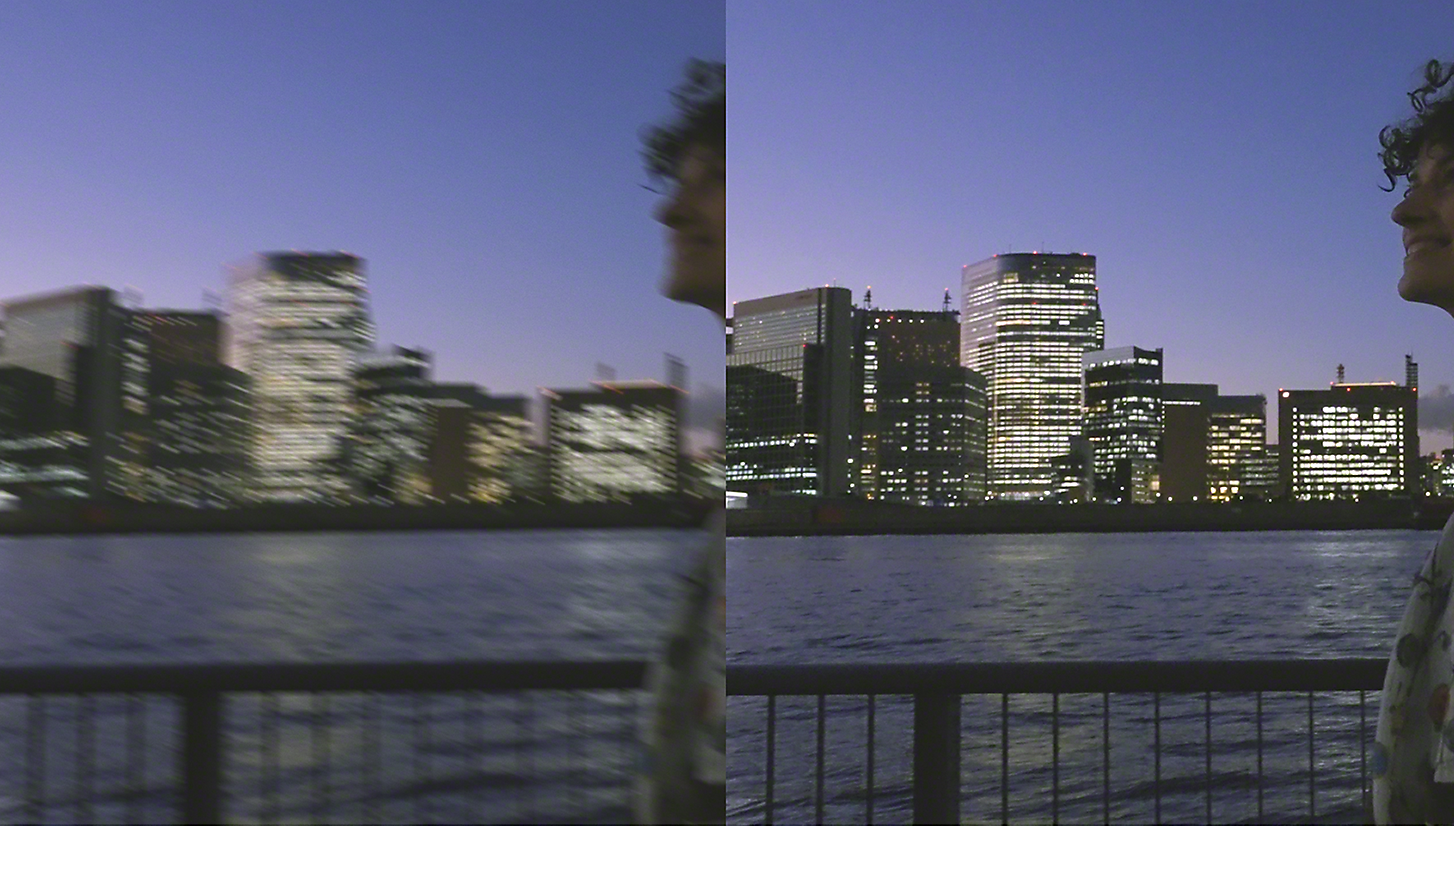 Dvojna slika obrisa mesta ponoči – slika na levi je zamegljena, slika na desni je ostra